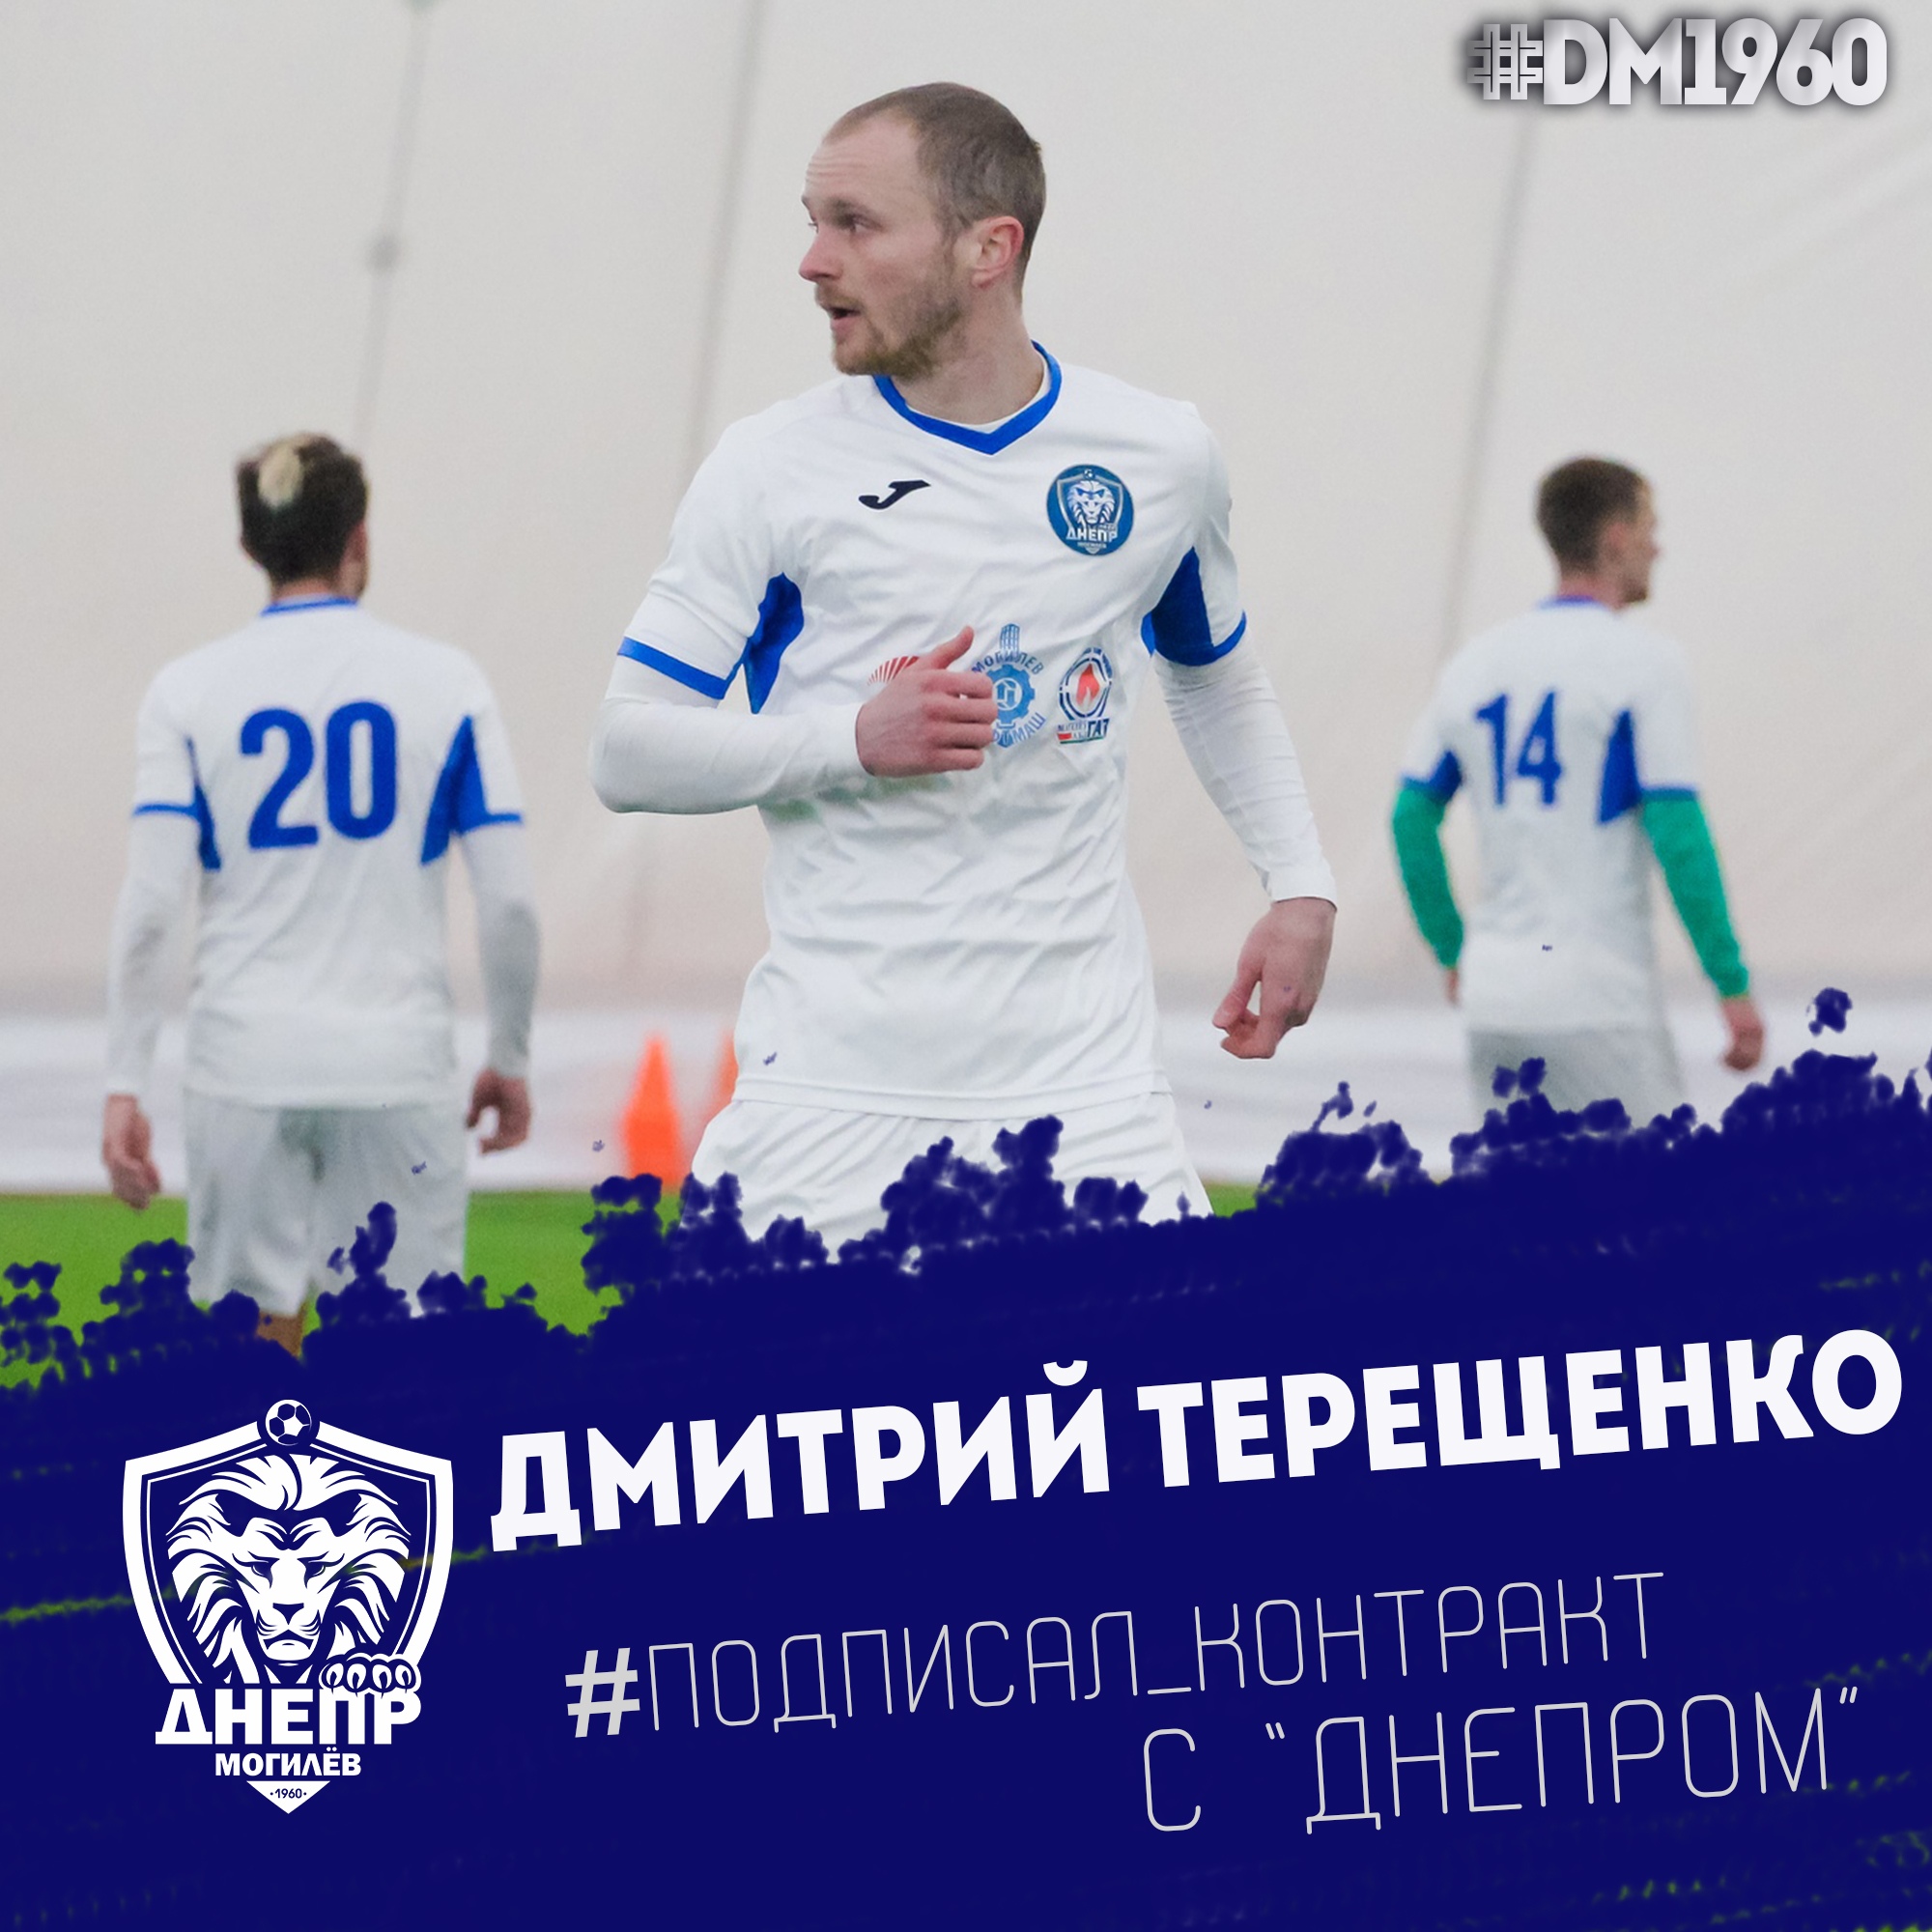 Дмитрий Терещенко - футболист Днепра